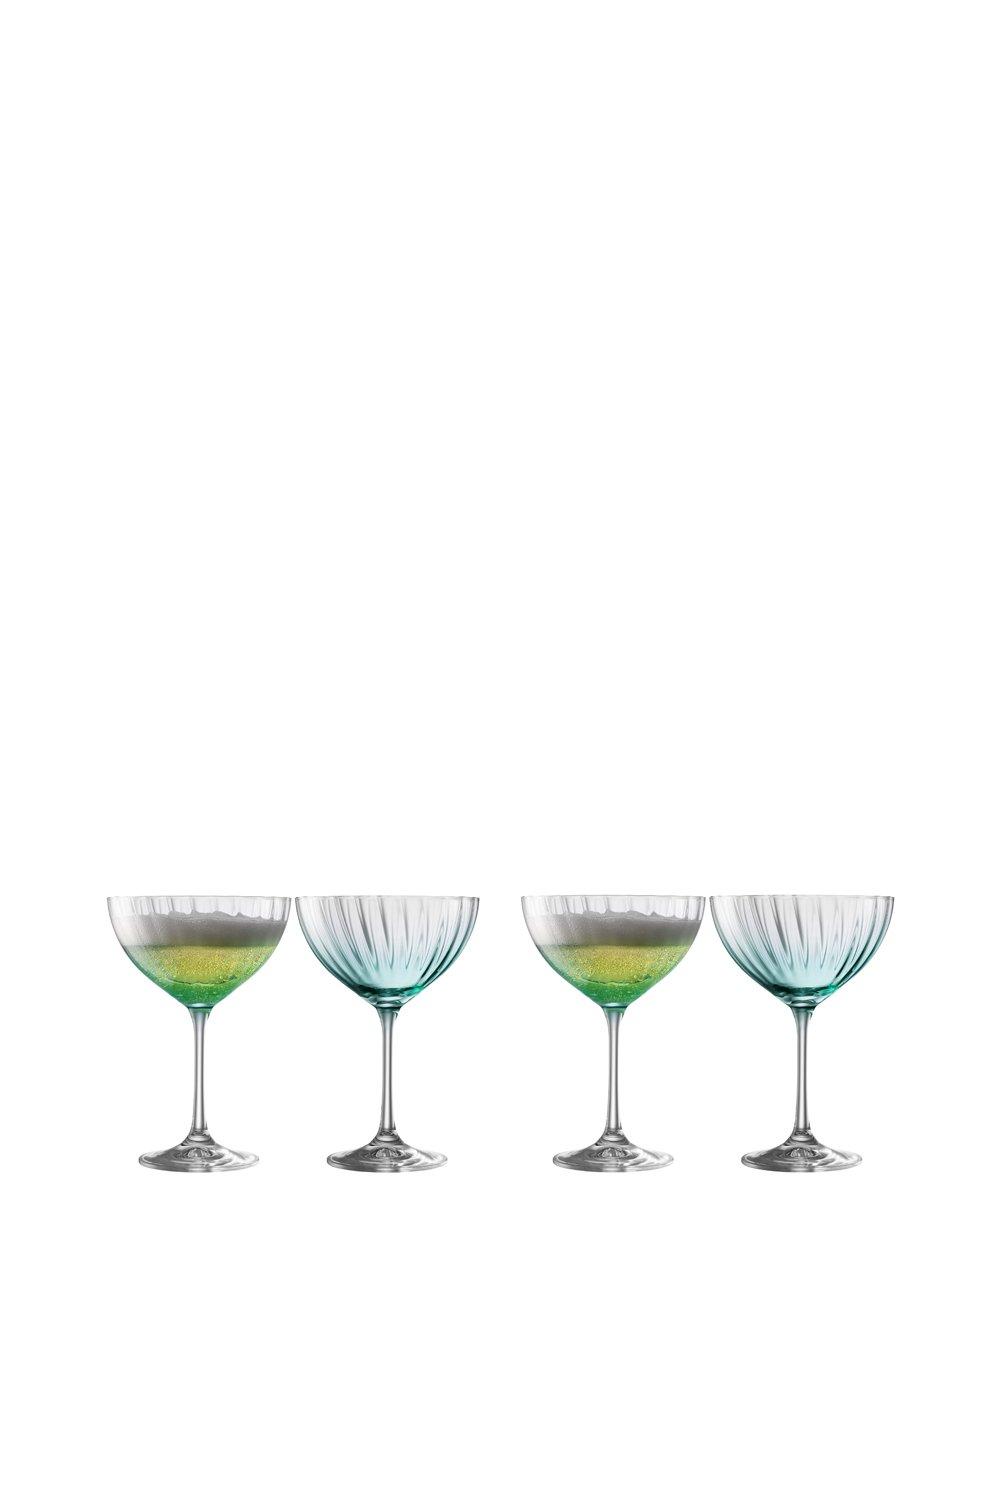 Erne' Aqua Cocktail/Champagne Set of 4